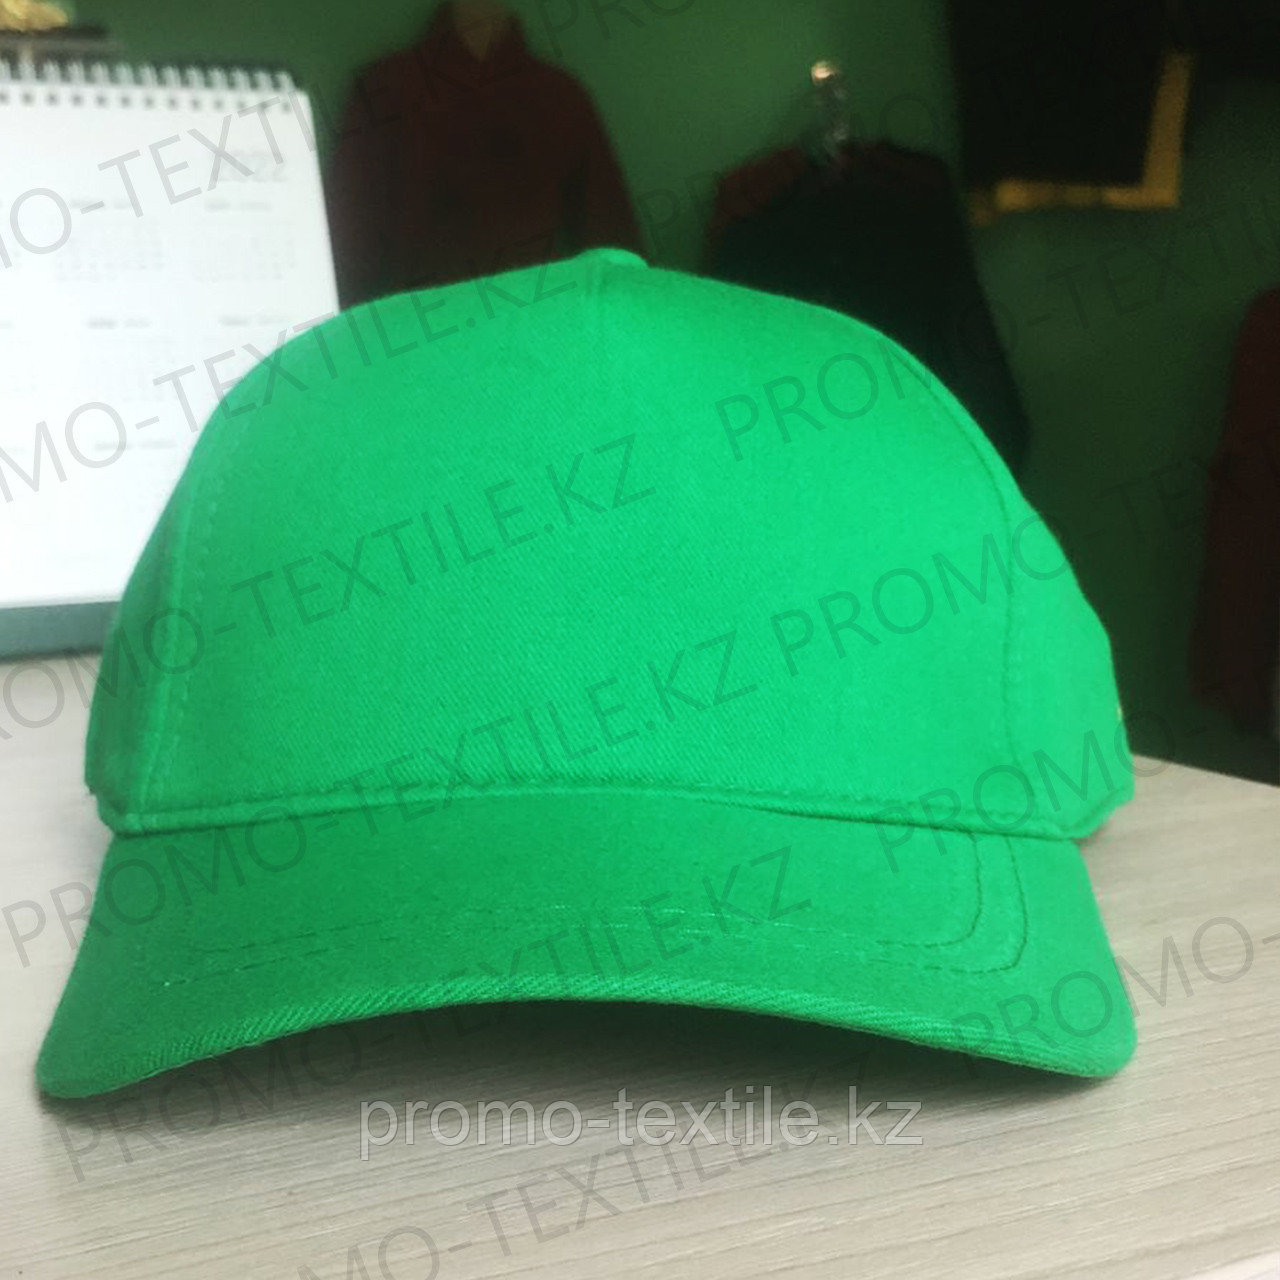 Зеленые кепки под нанесение | Бейсболка зеленого цвета, фото 1